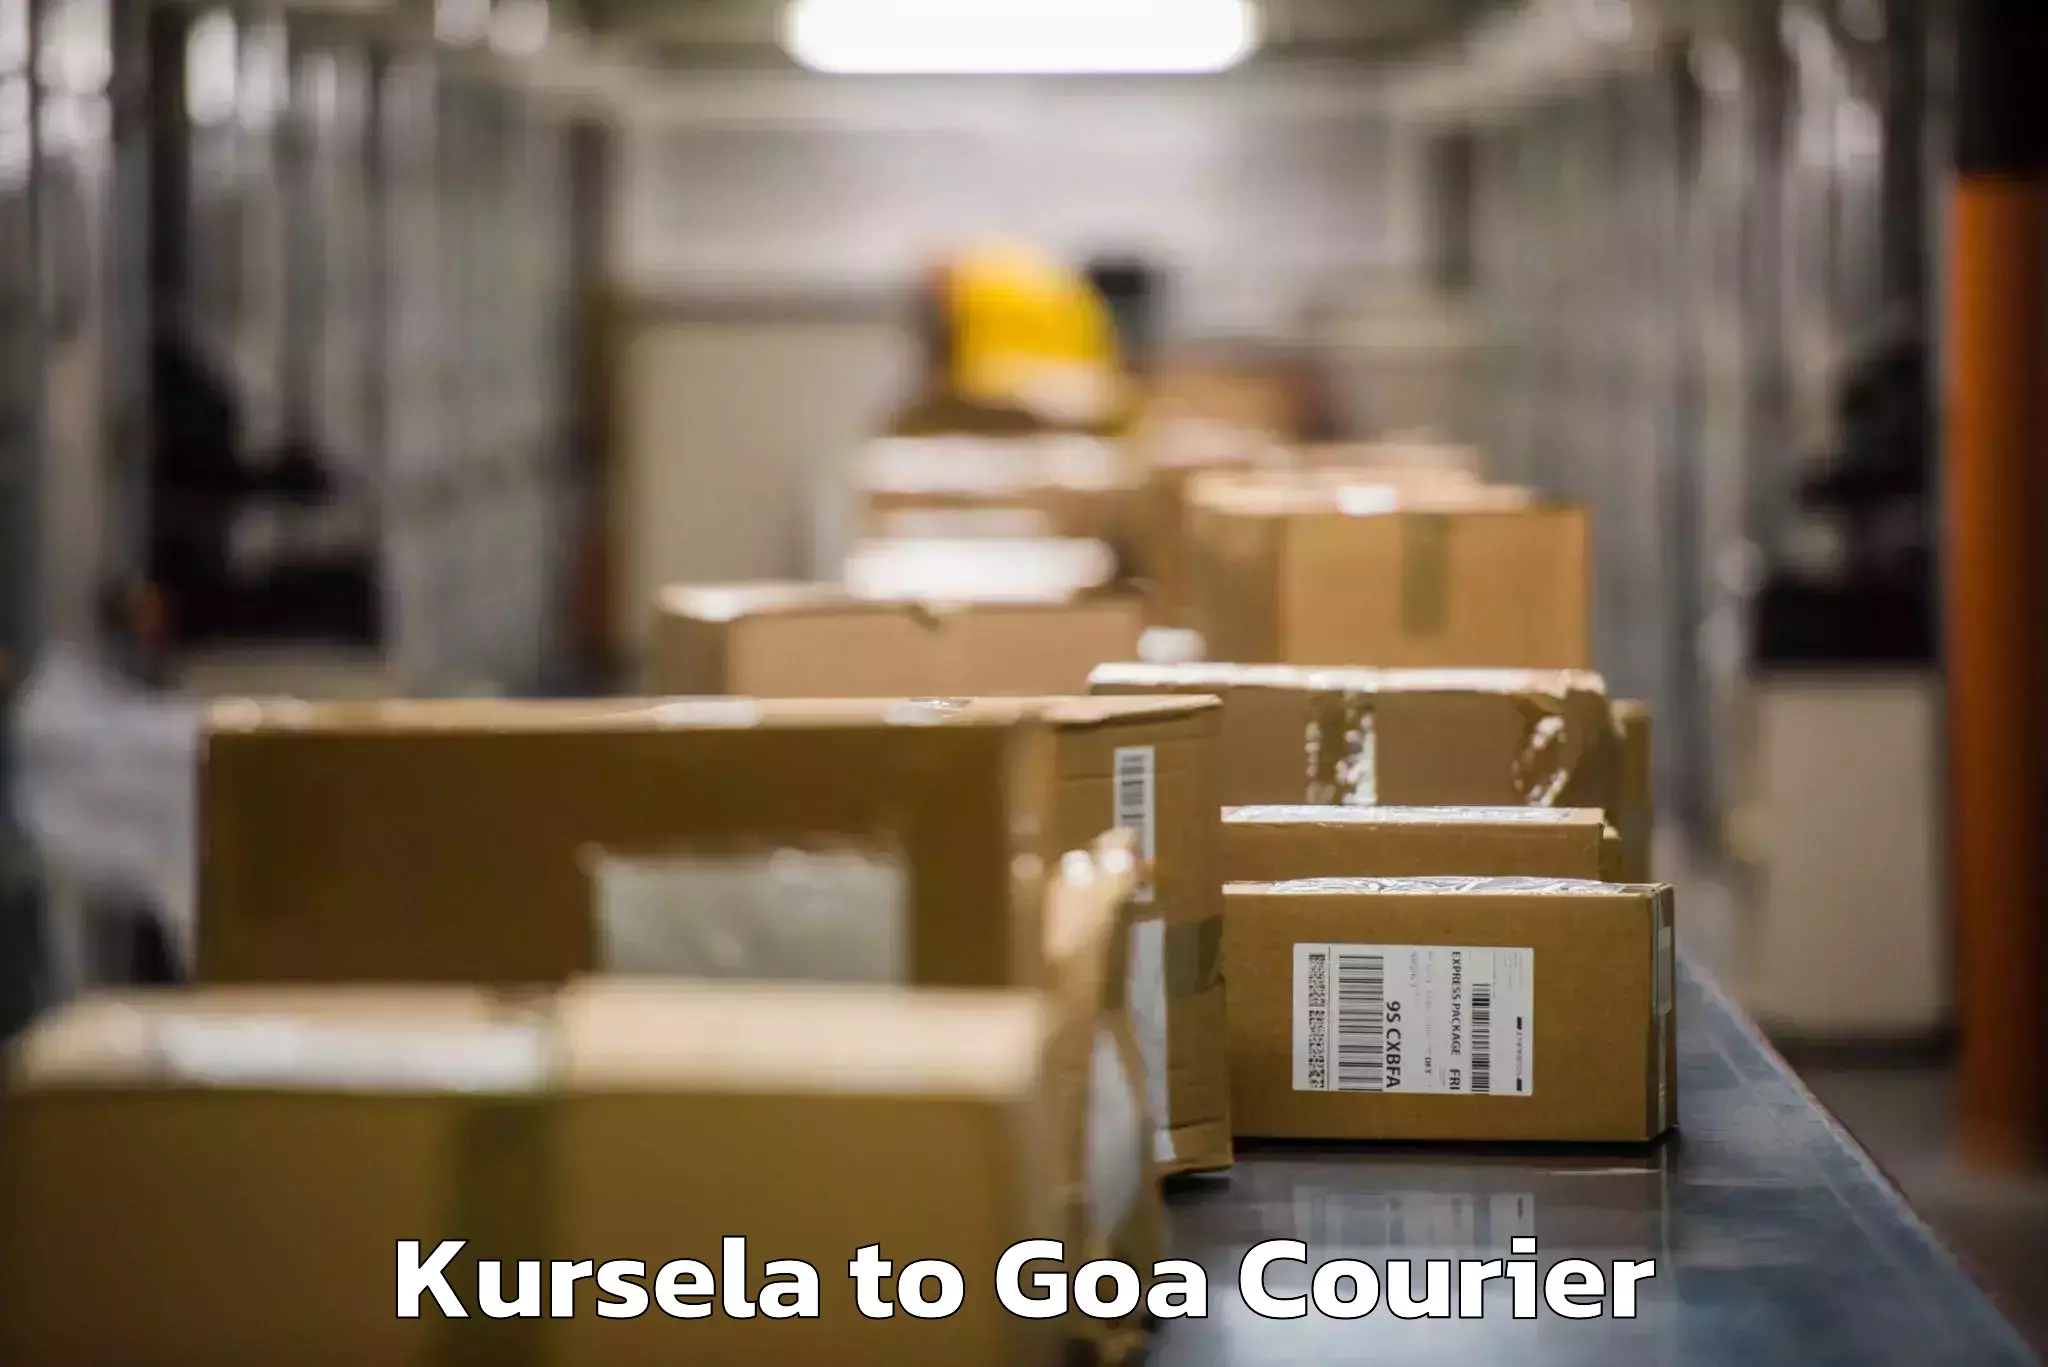 Baggage transport scheduler Kursela to Goa